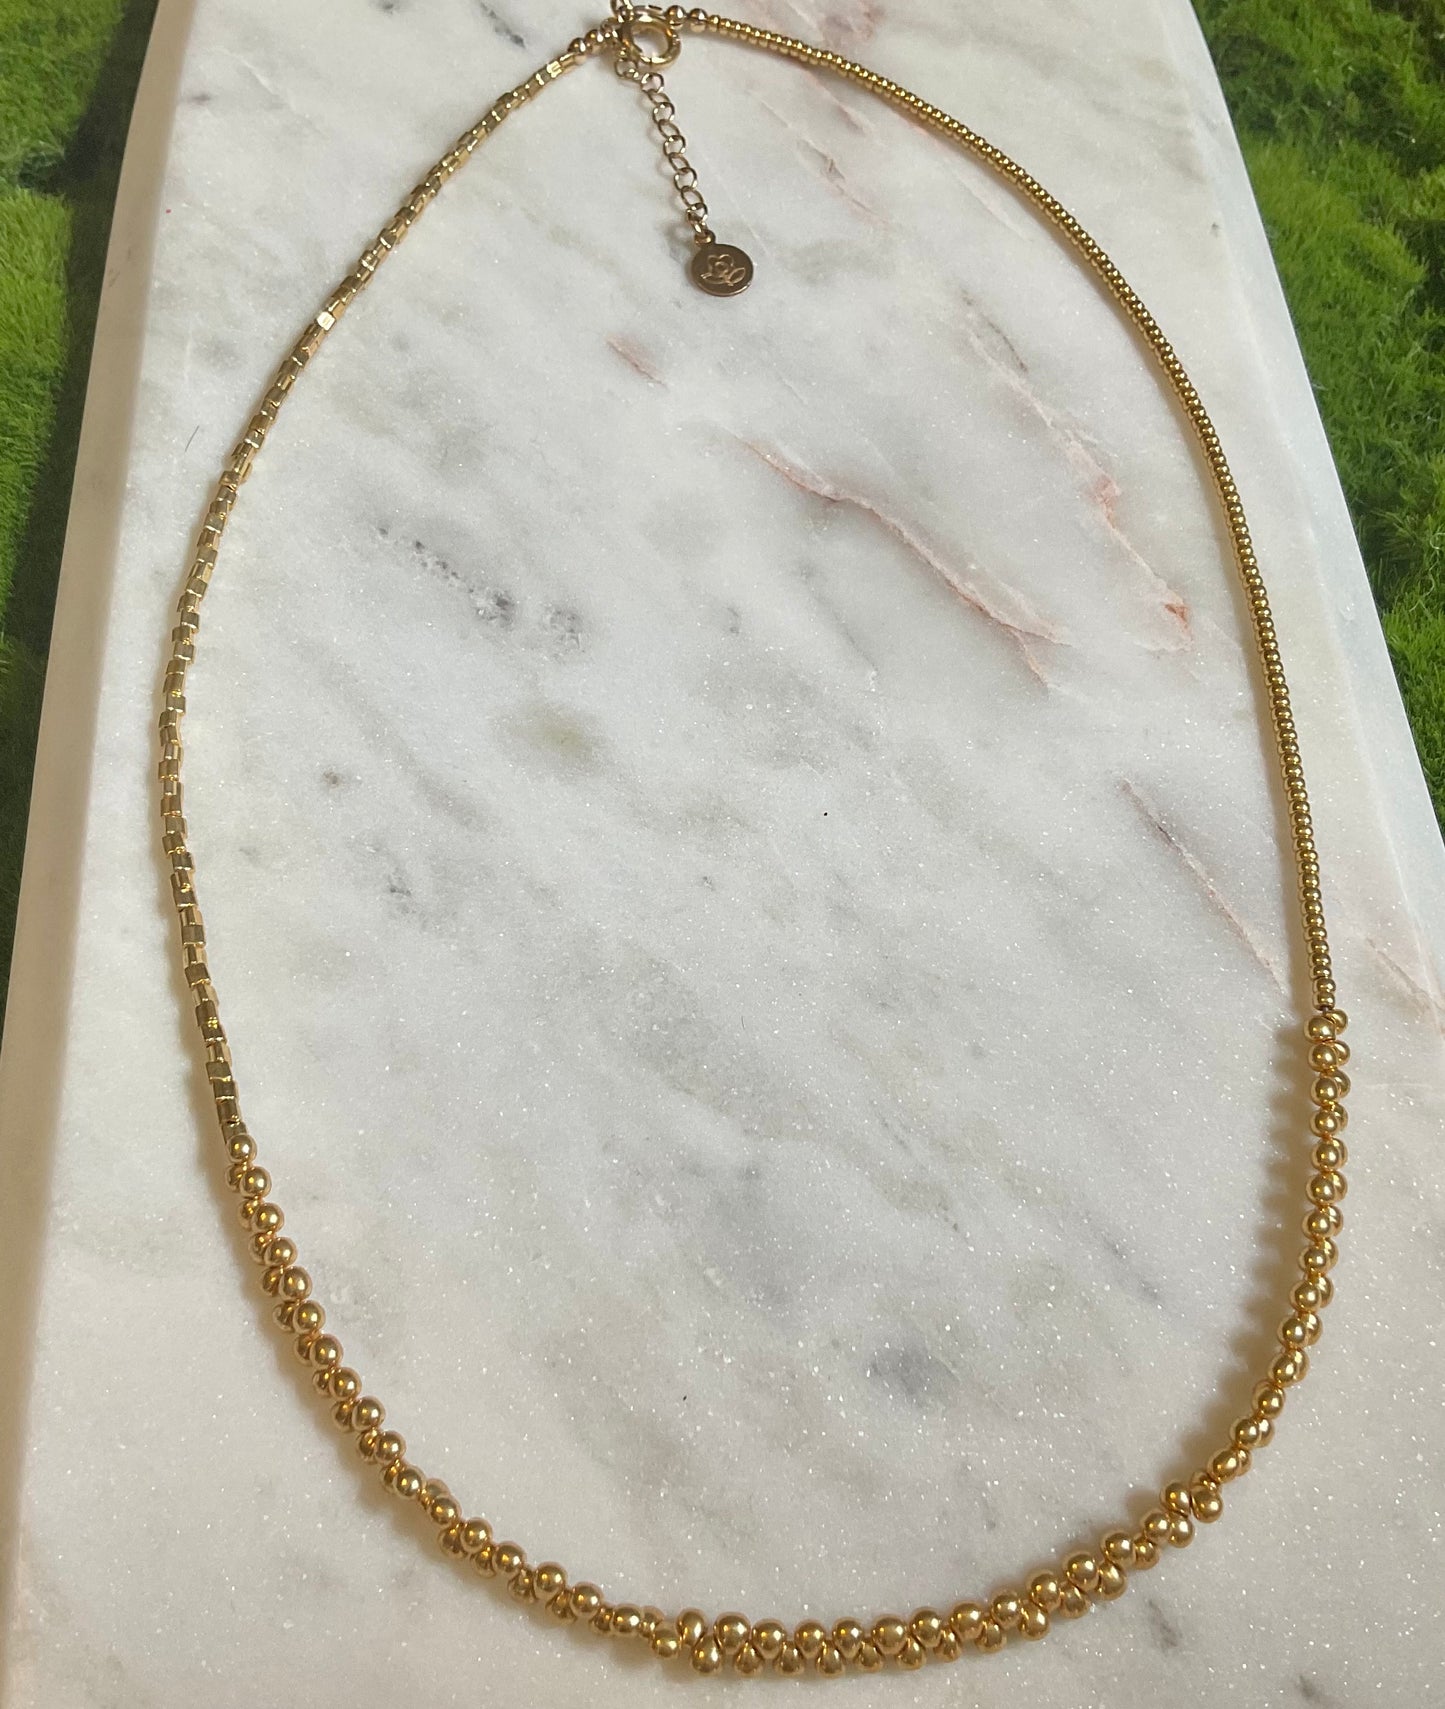 Gold Tone Wrap Bracelet/Necklace